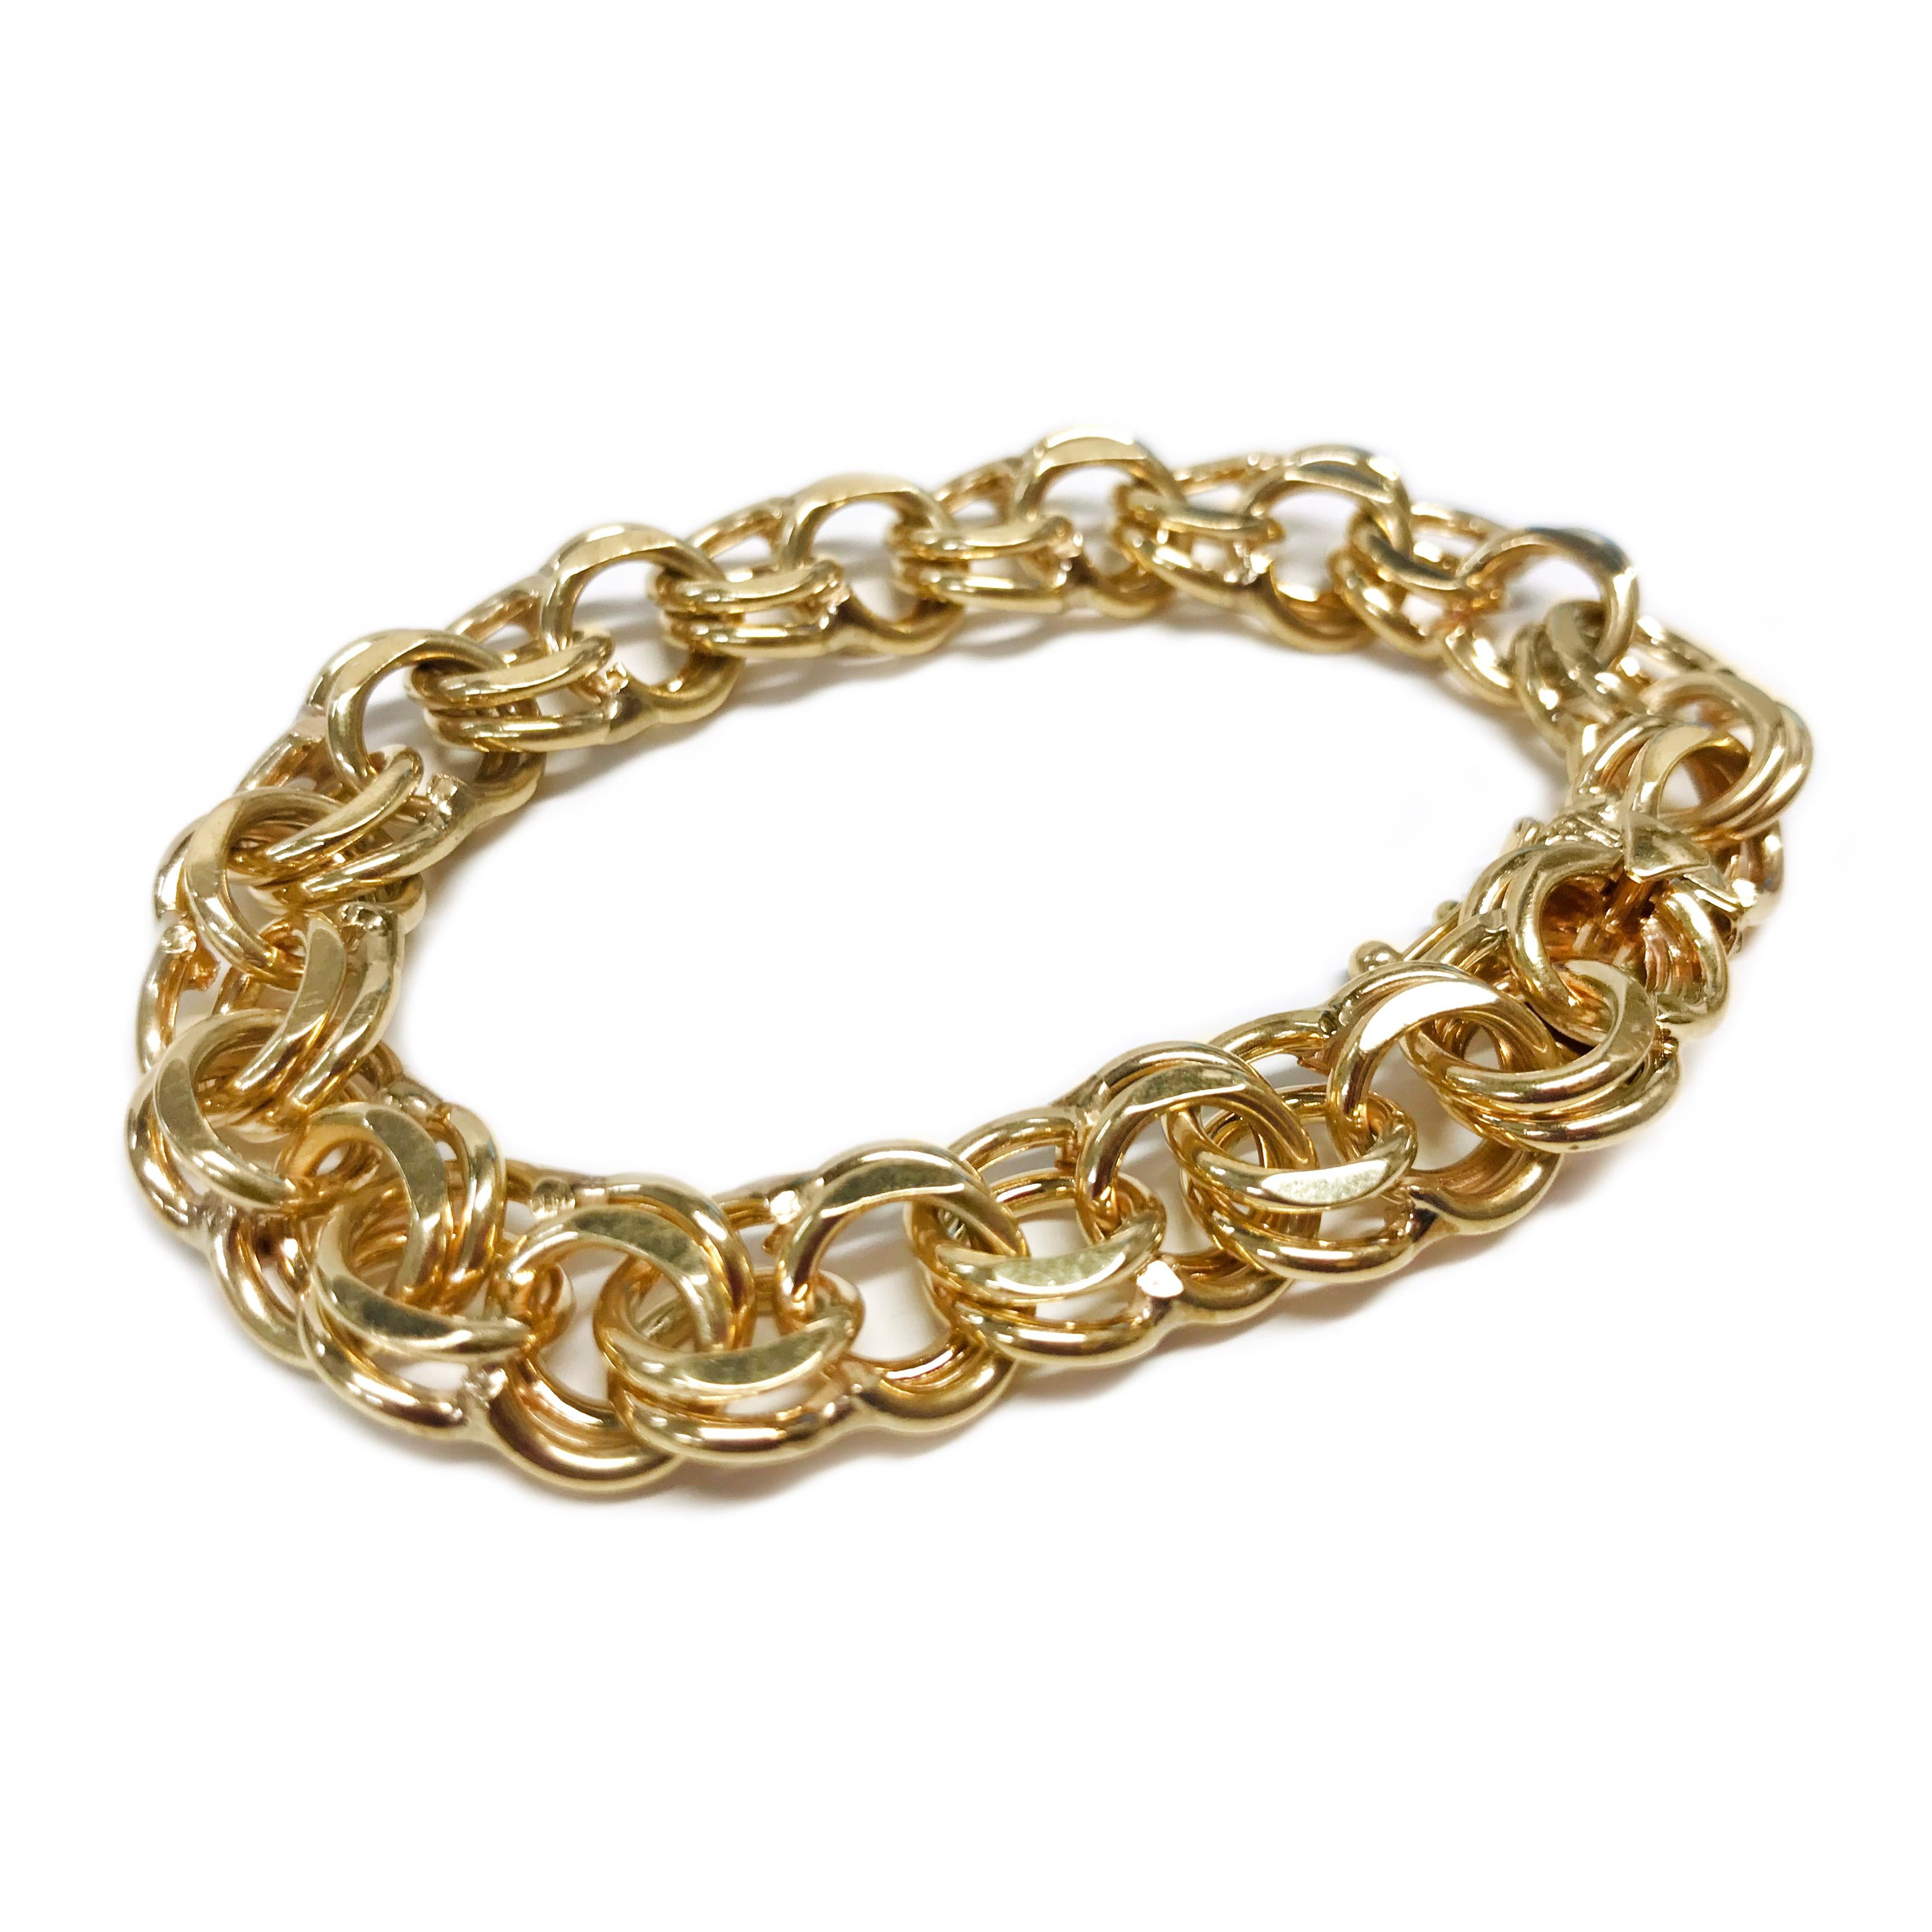 14 Karat Wide Double Link Charm Bracelet. The bracelet features yellow gold double links. The bracelet is 0.40